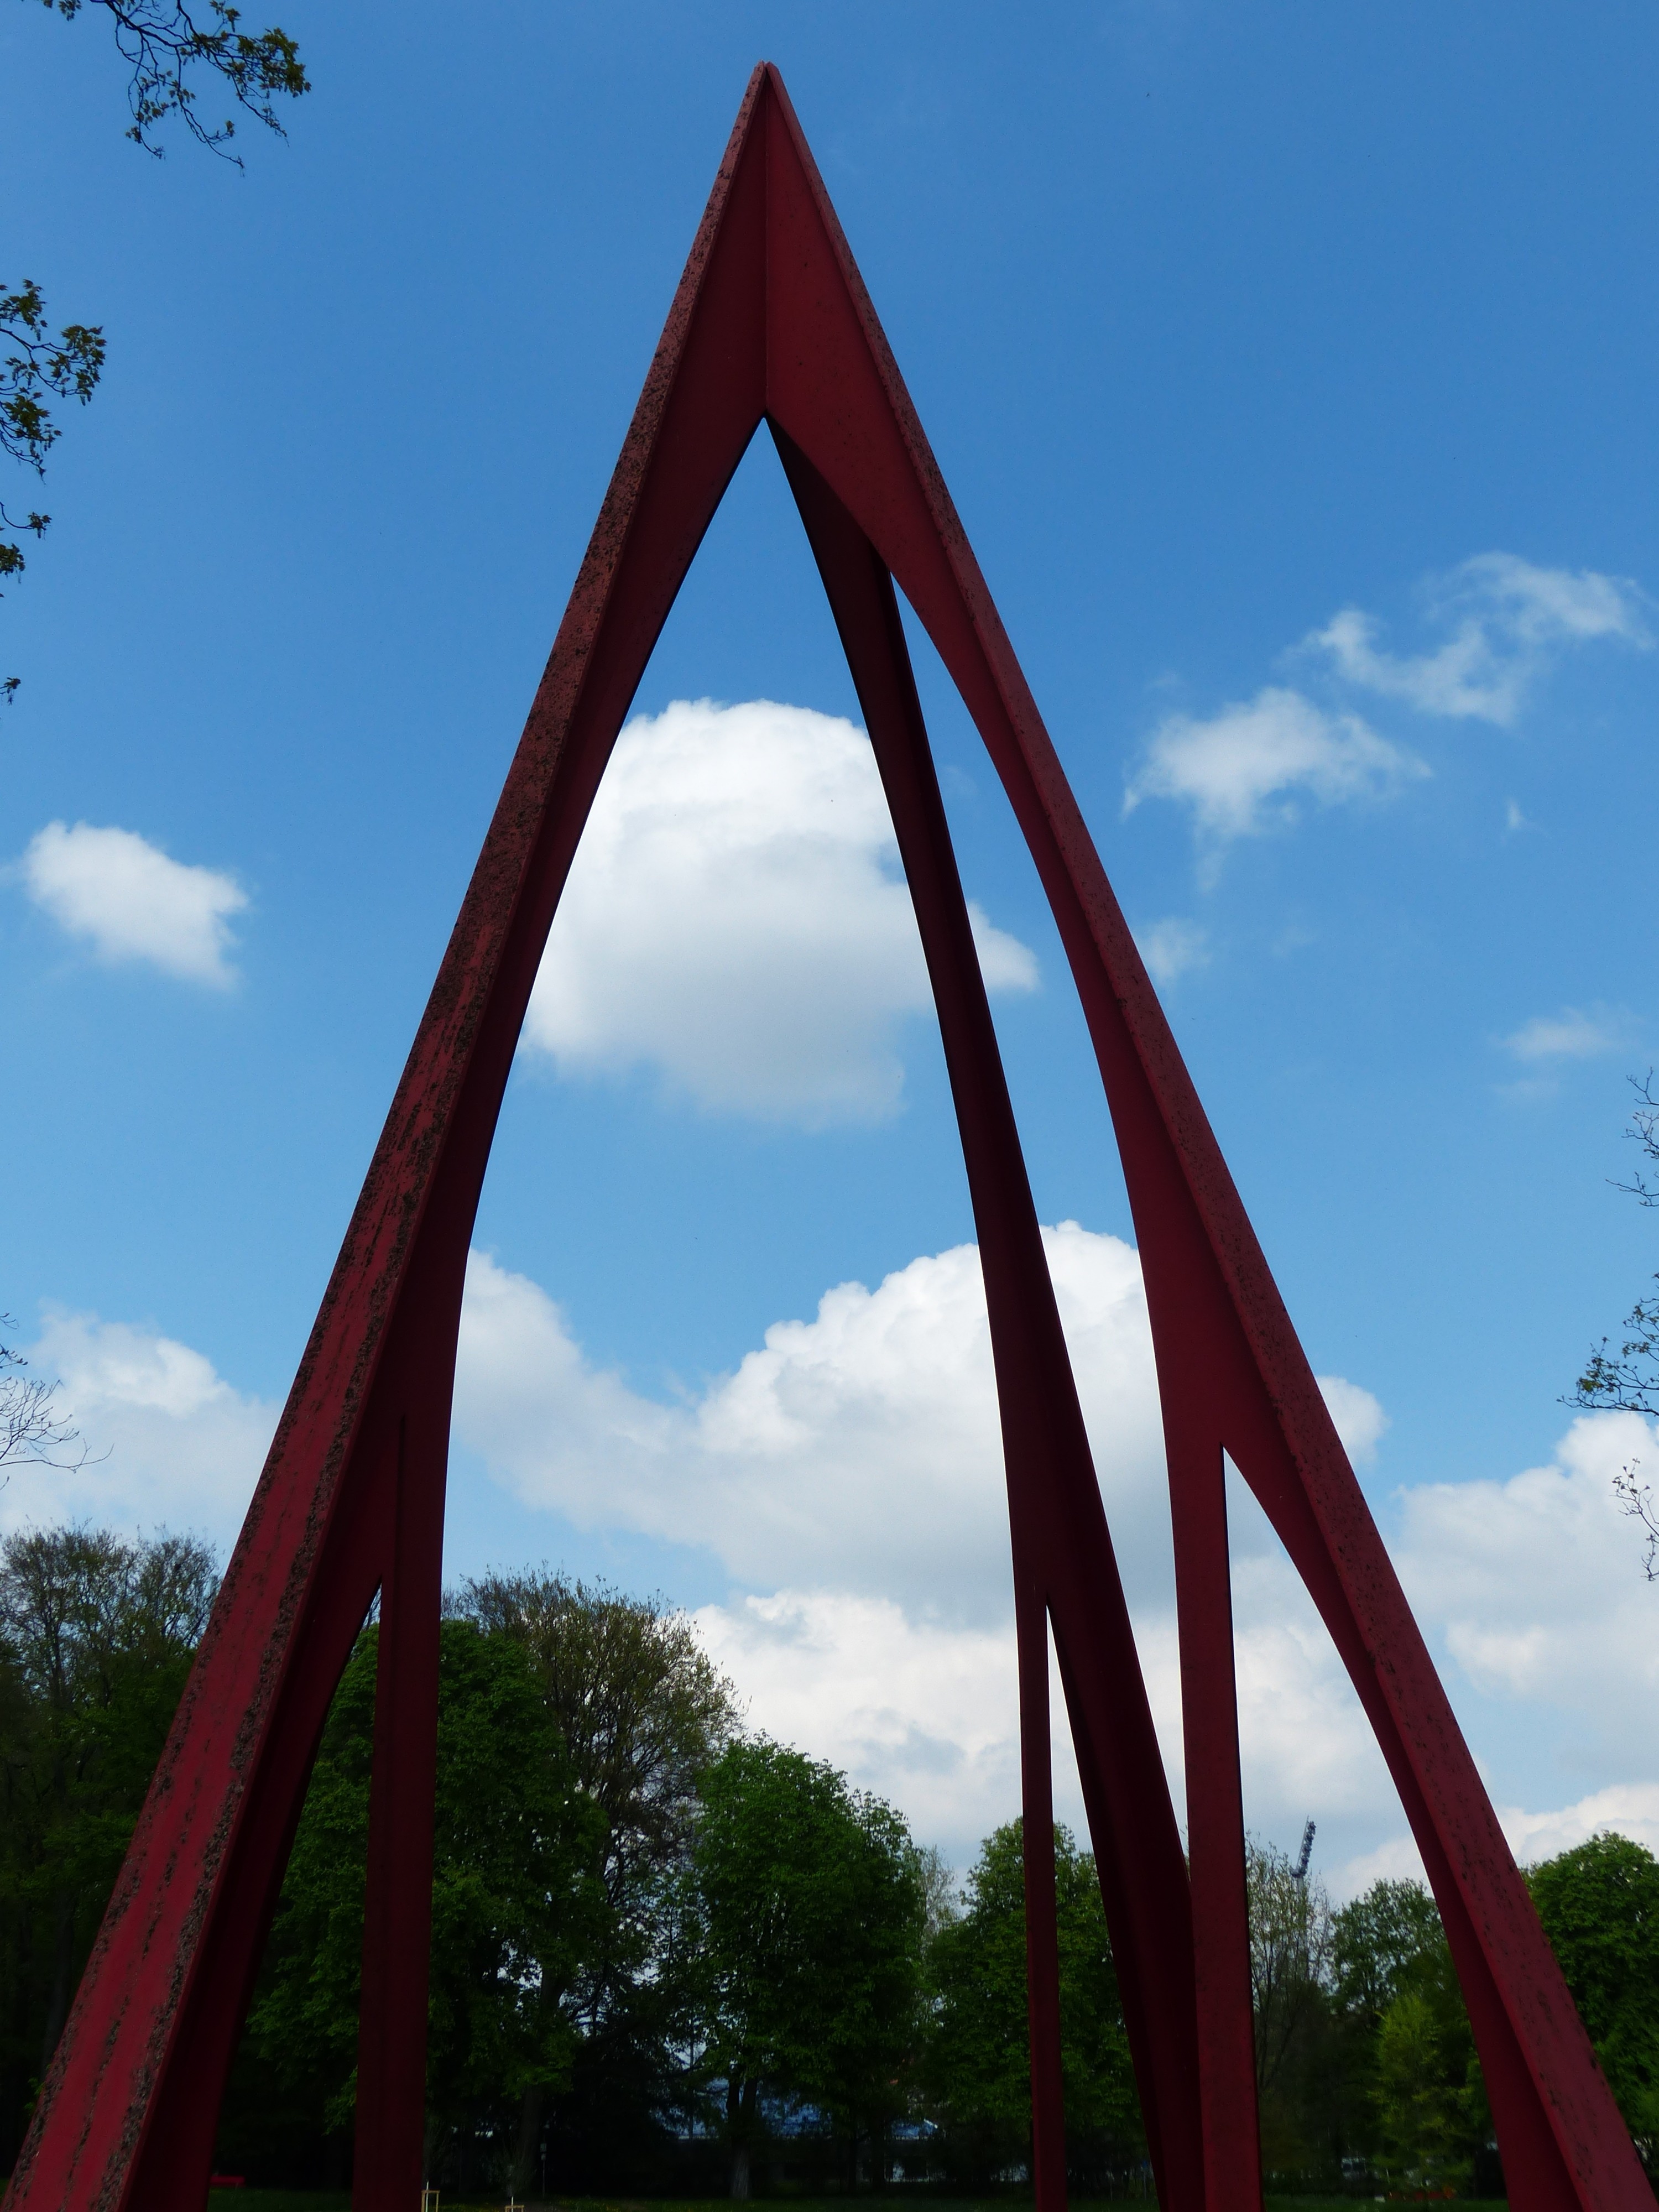 red triangular tower